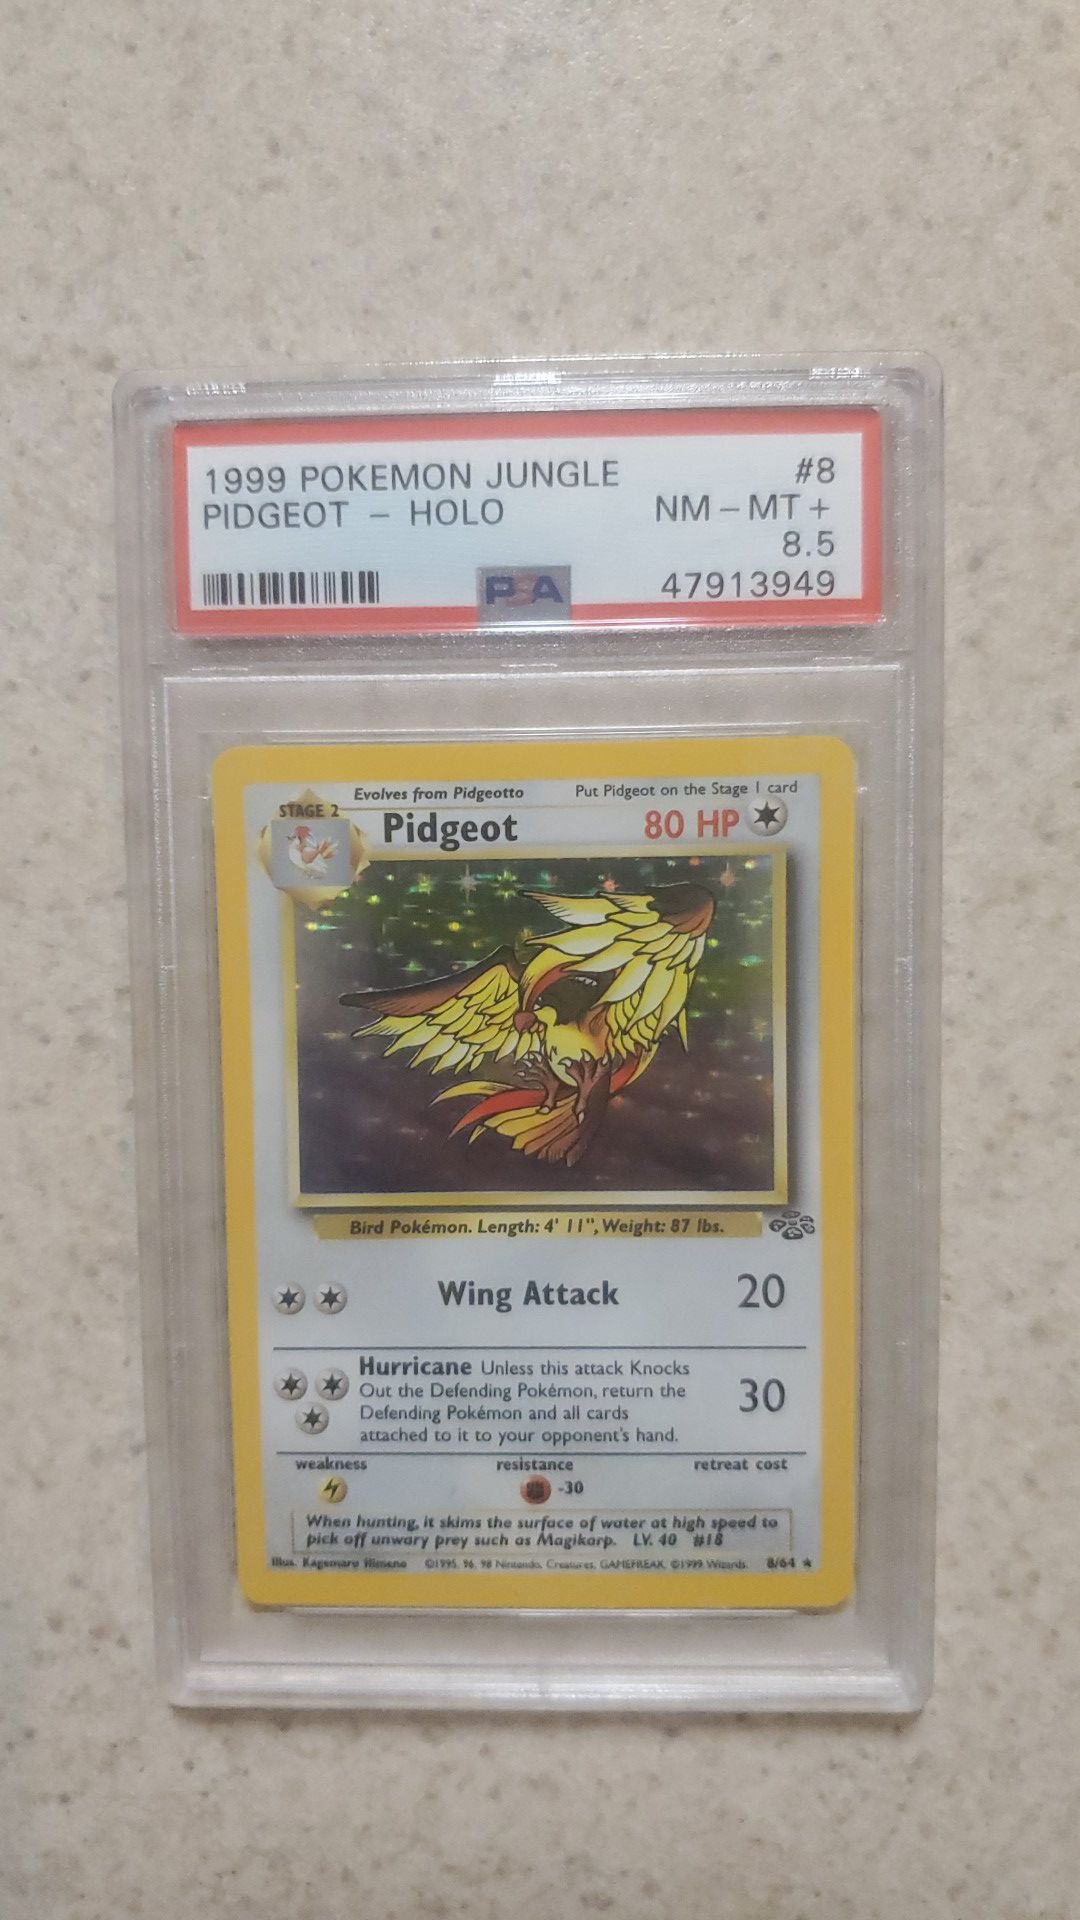 Pidgeot pokemon 1999 jungle 8.5 psa graded